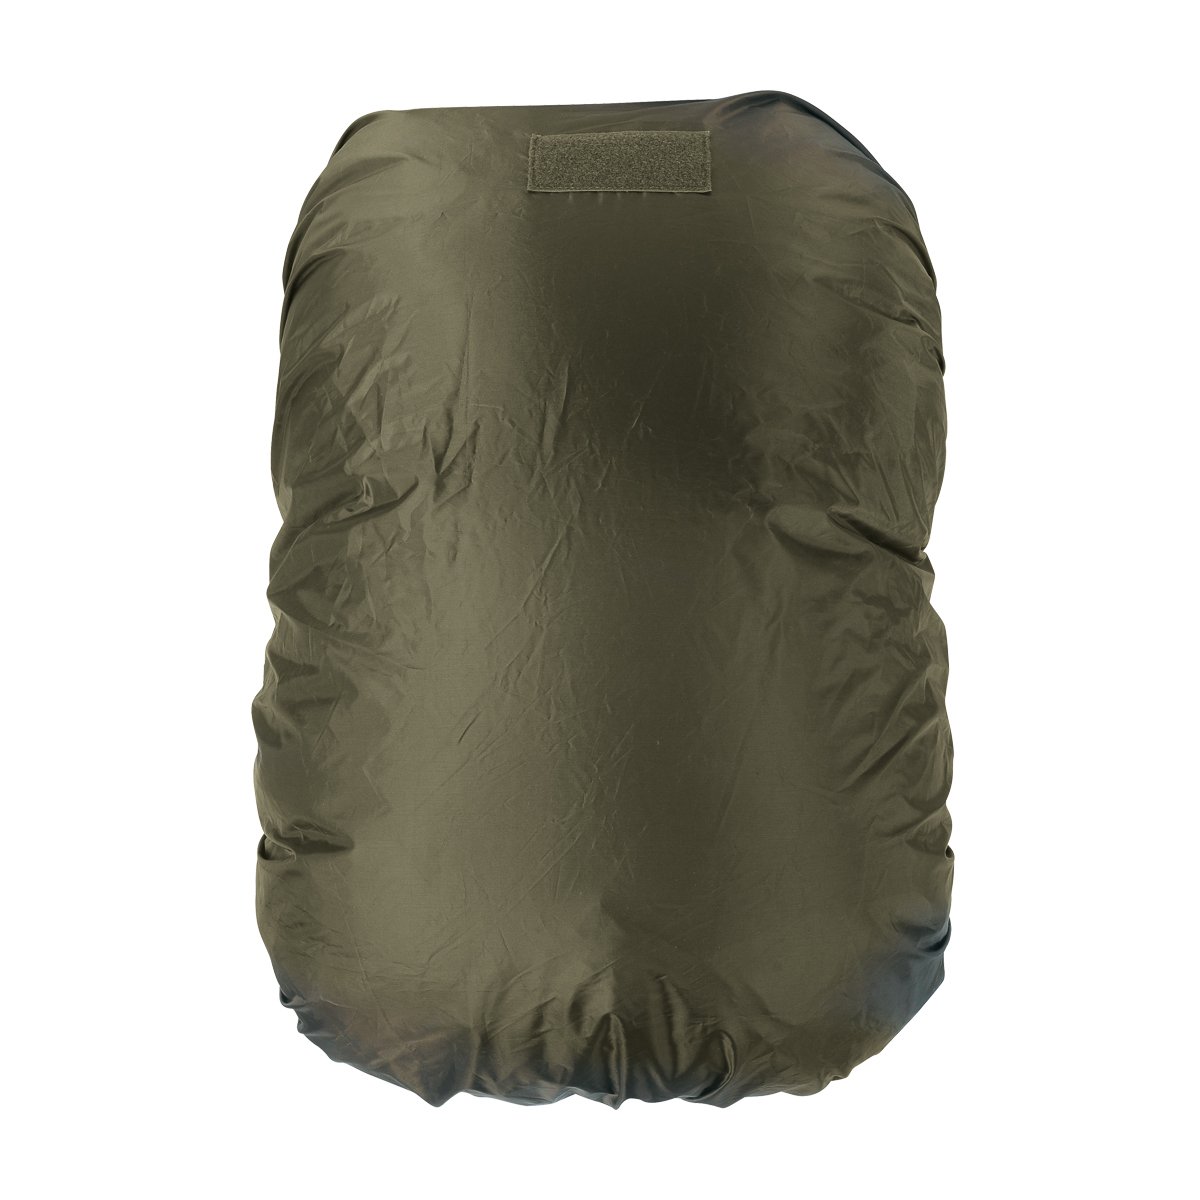 Produktbild von Tasmanian Tiger Raincover XL, olive - Regenhülle für 60-100 Liter Rucksack